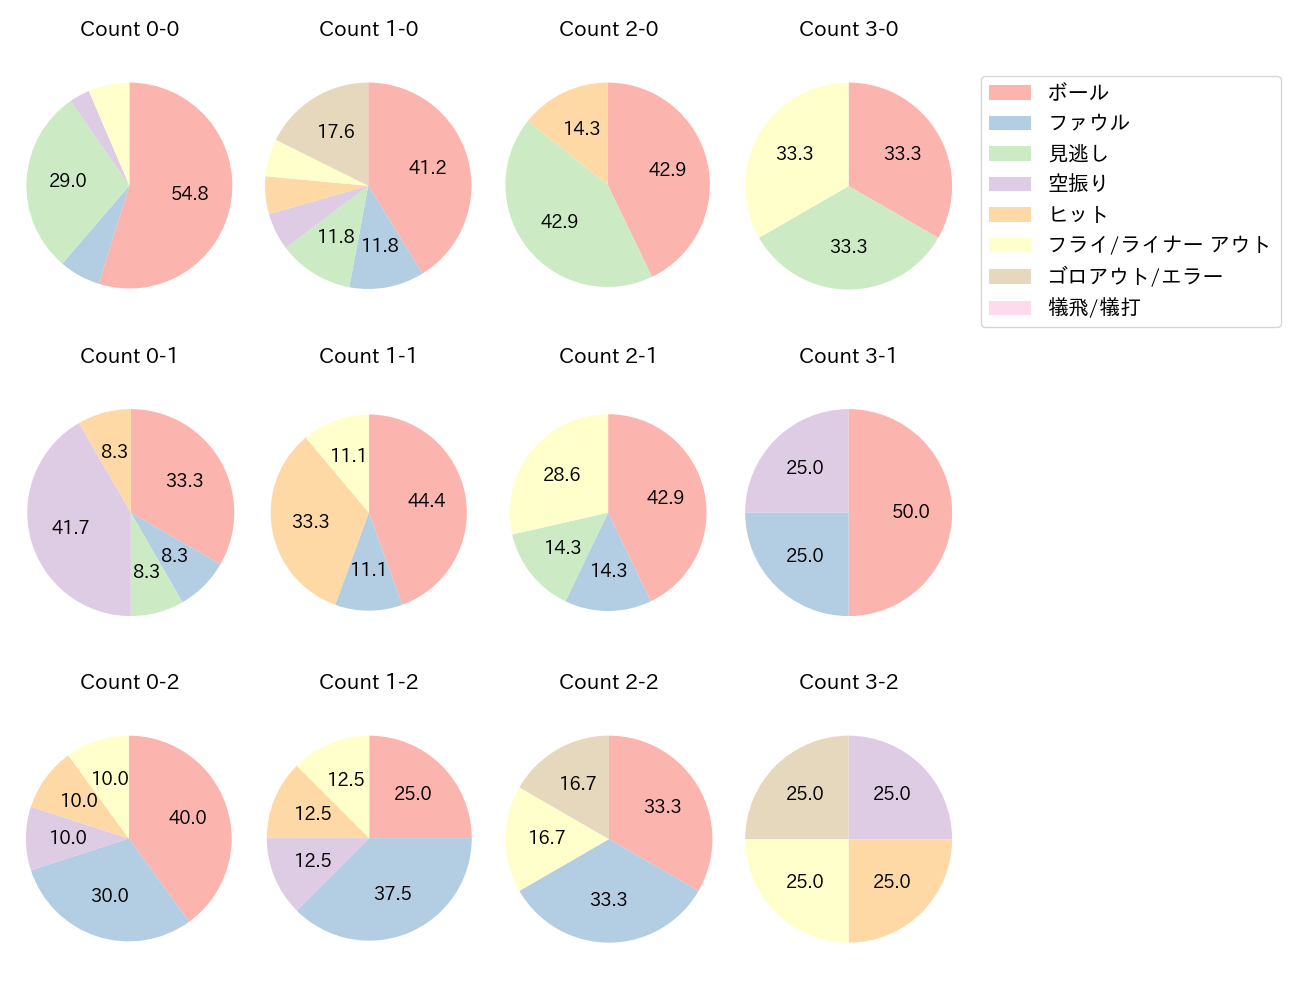 松山 竜平の球数分布(2021年5月)